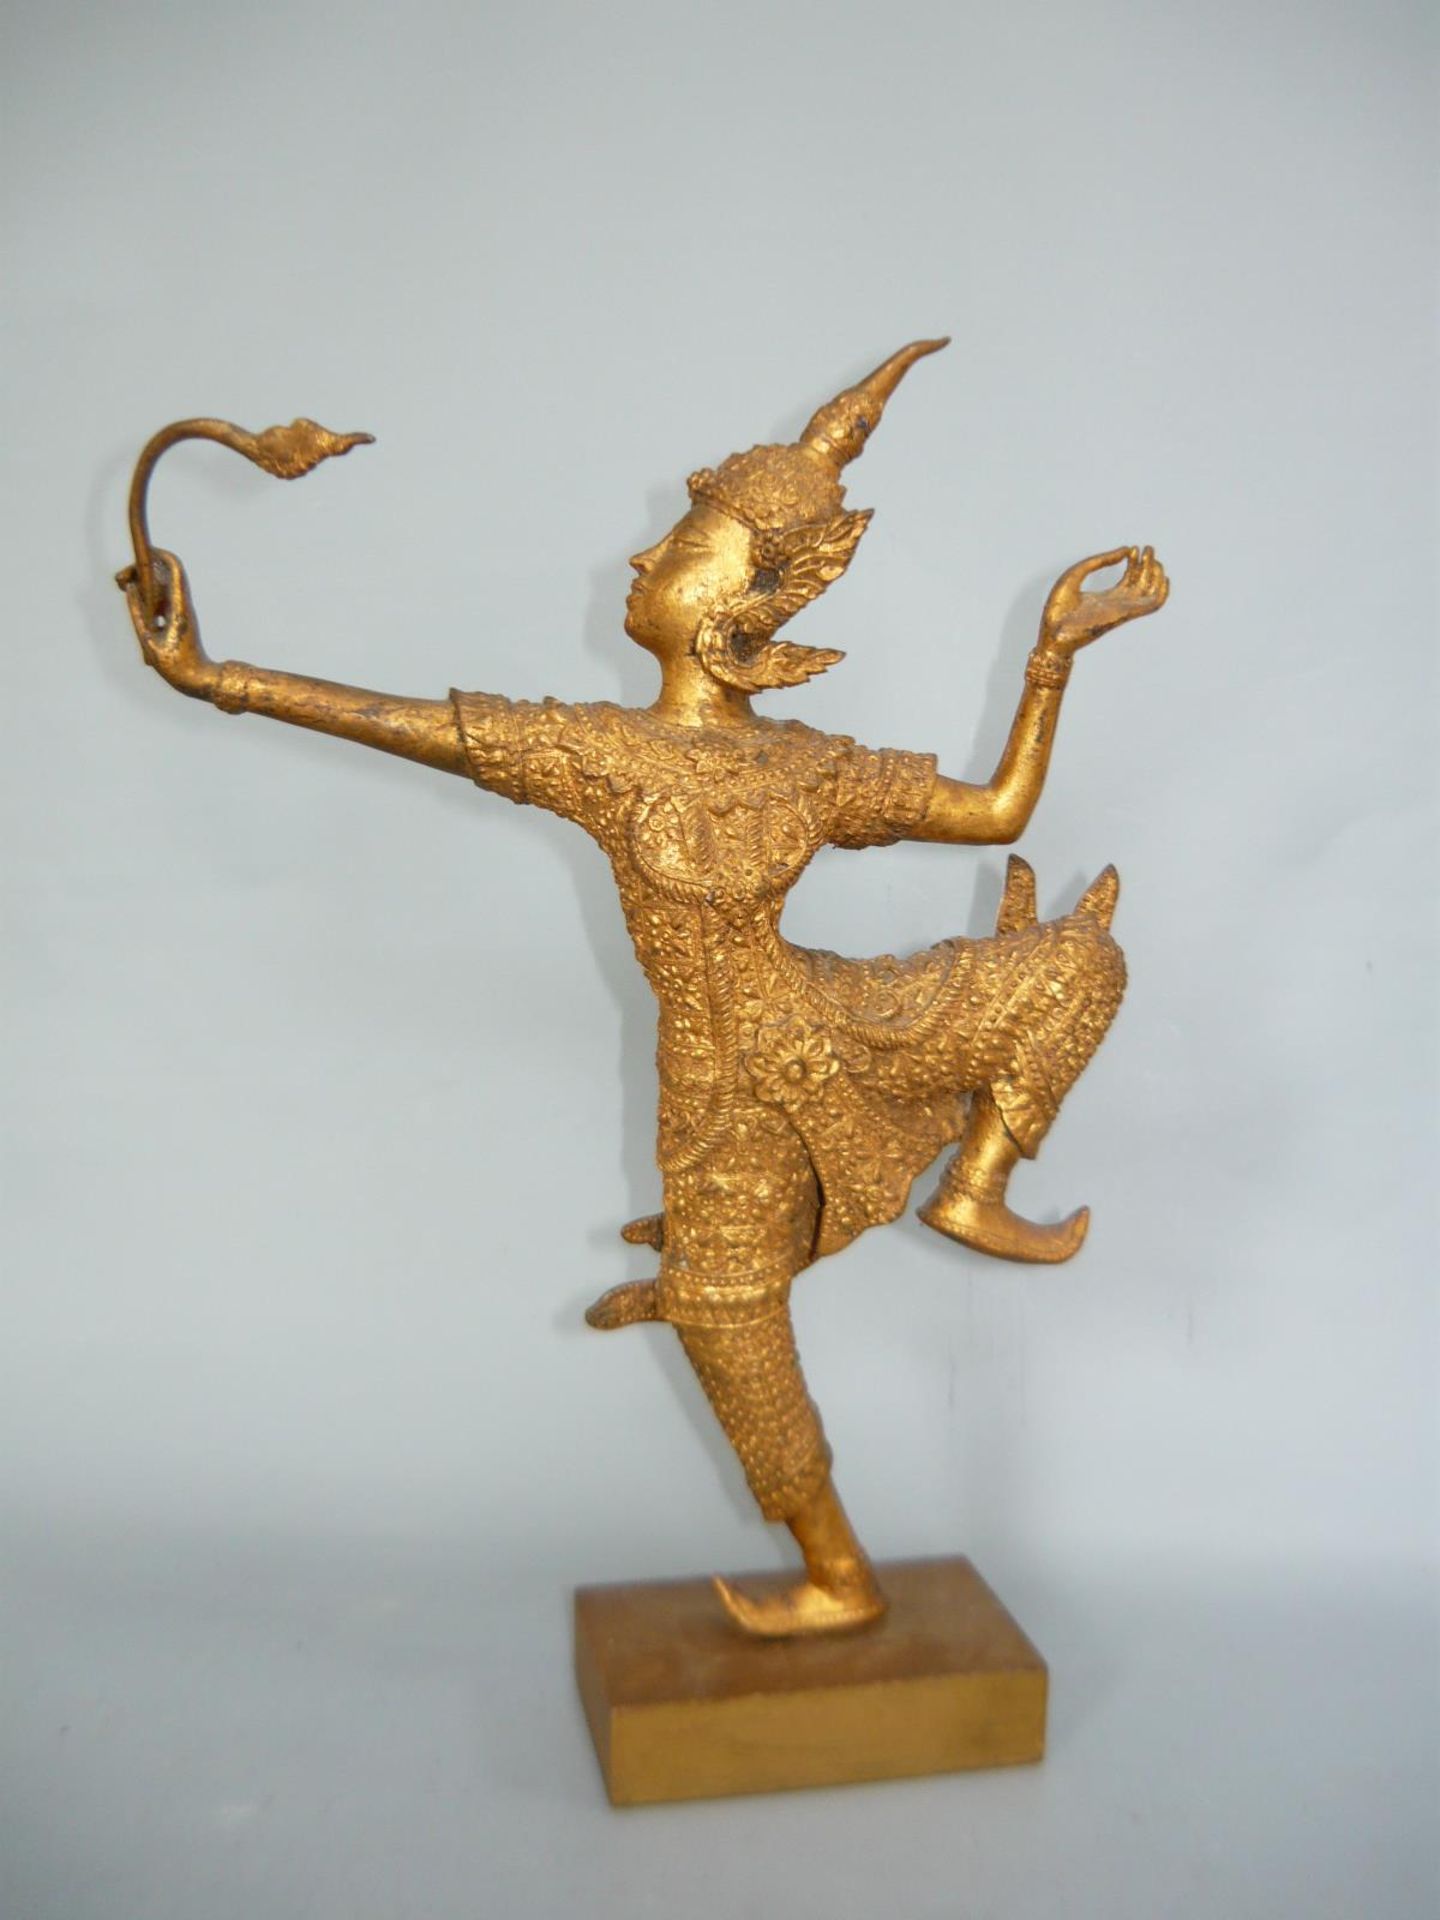 Figur in ritueller Tanzpose. Bronze, vergoldet auf Holzsockel. Asien, 20.Jhdt. Gesamthöhe ca. 33cm.